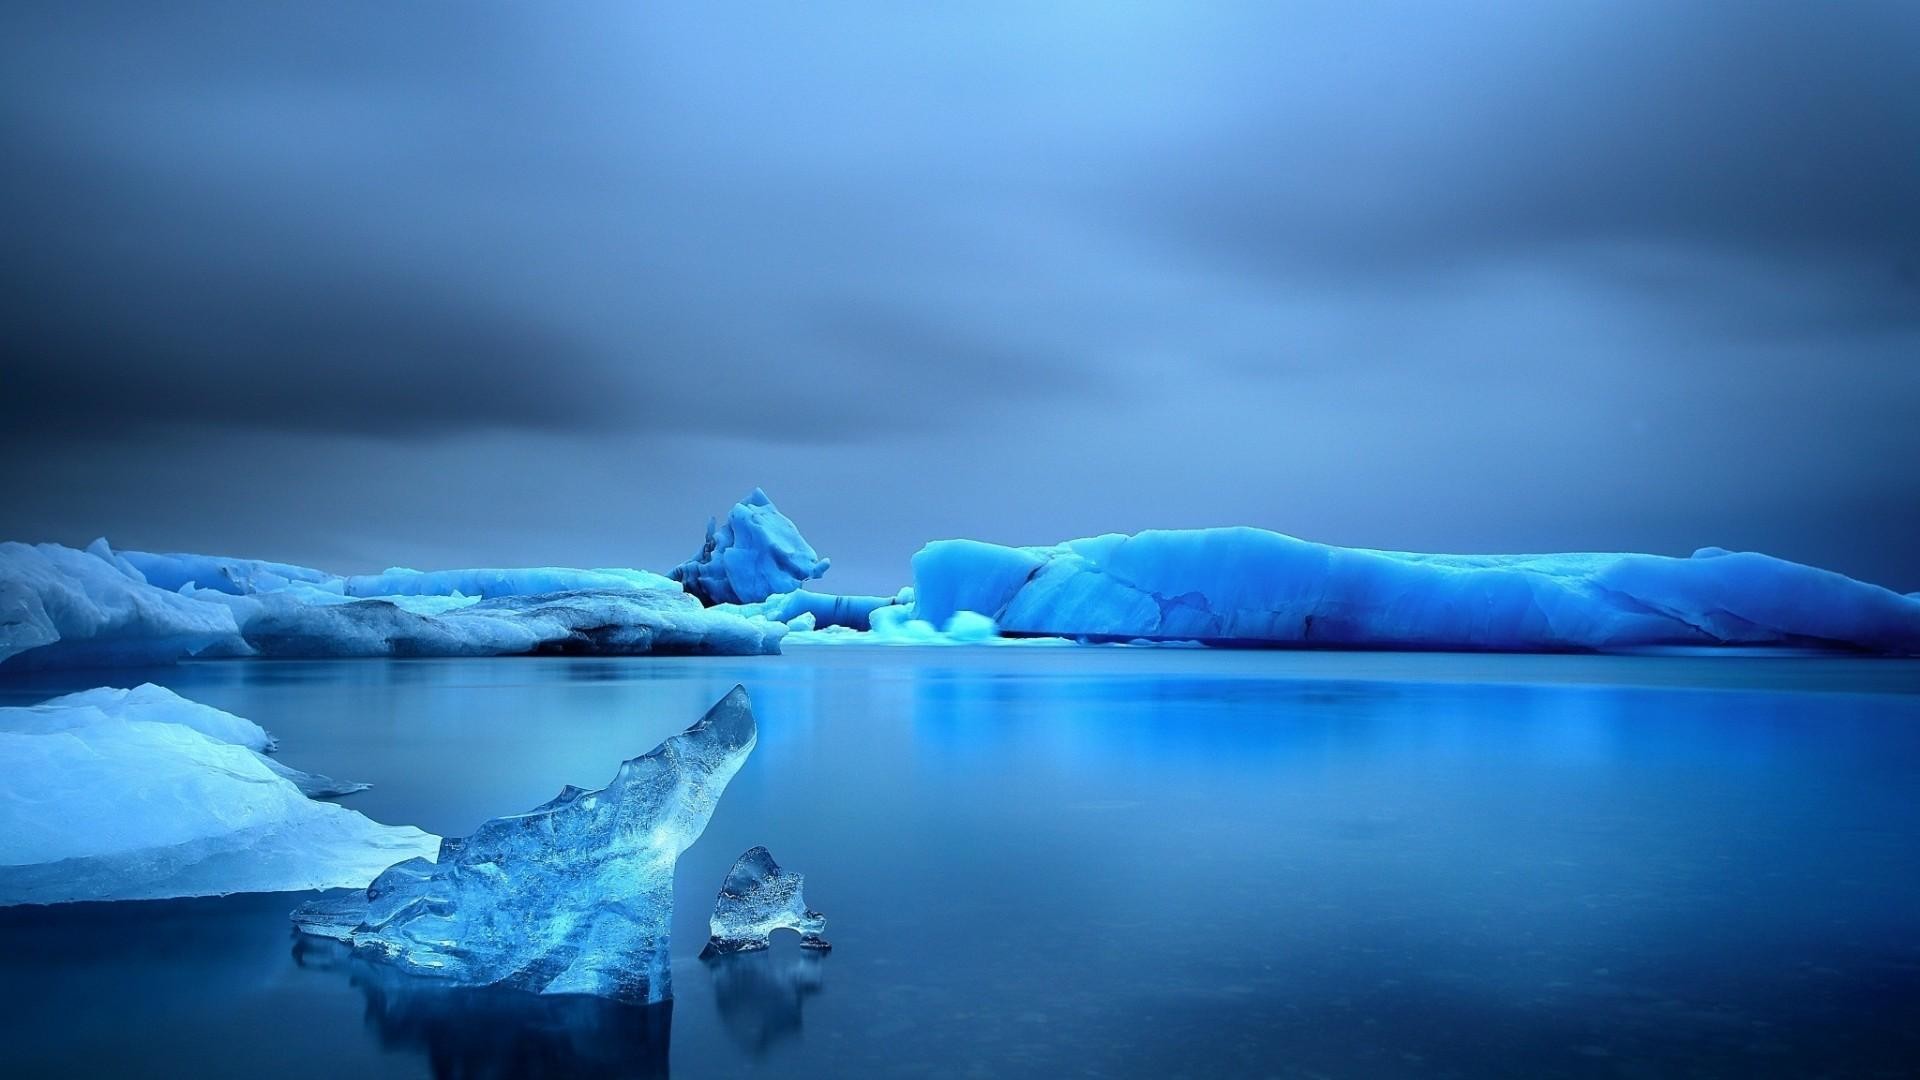 fond d'écran iceberg hd,iceberg,la glace,la nature,océan arctique,océan